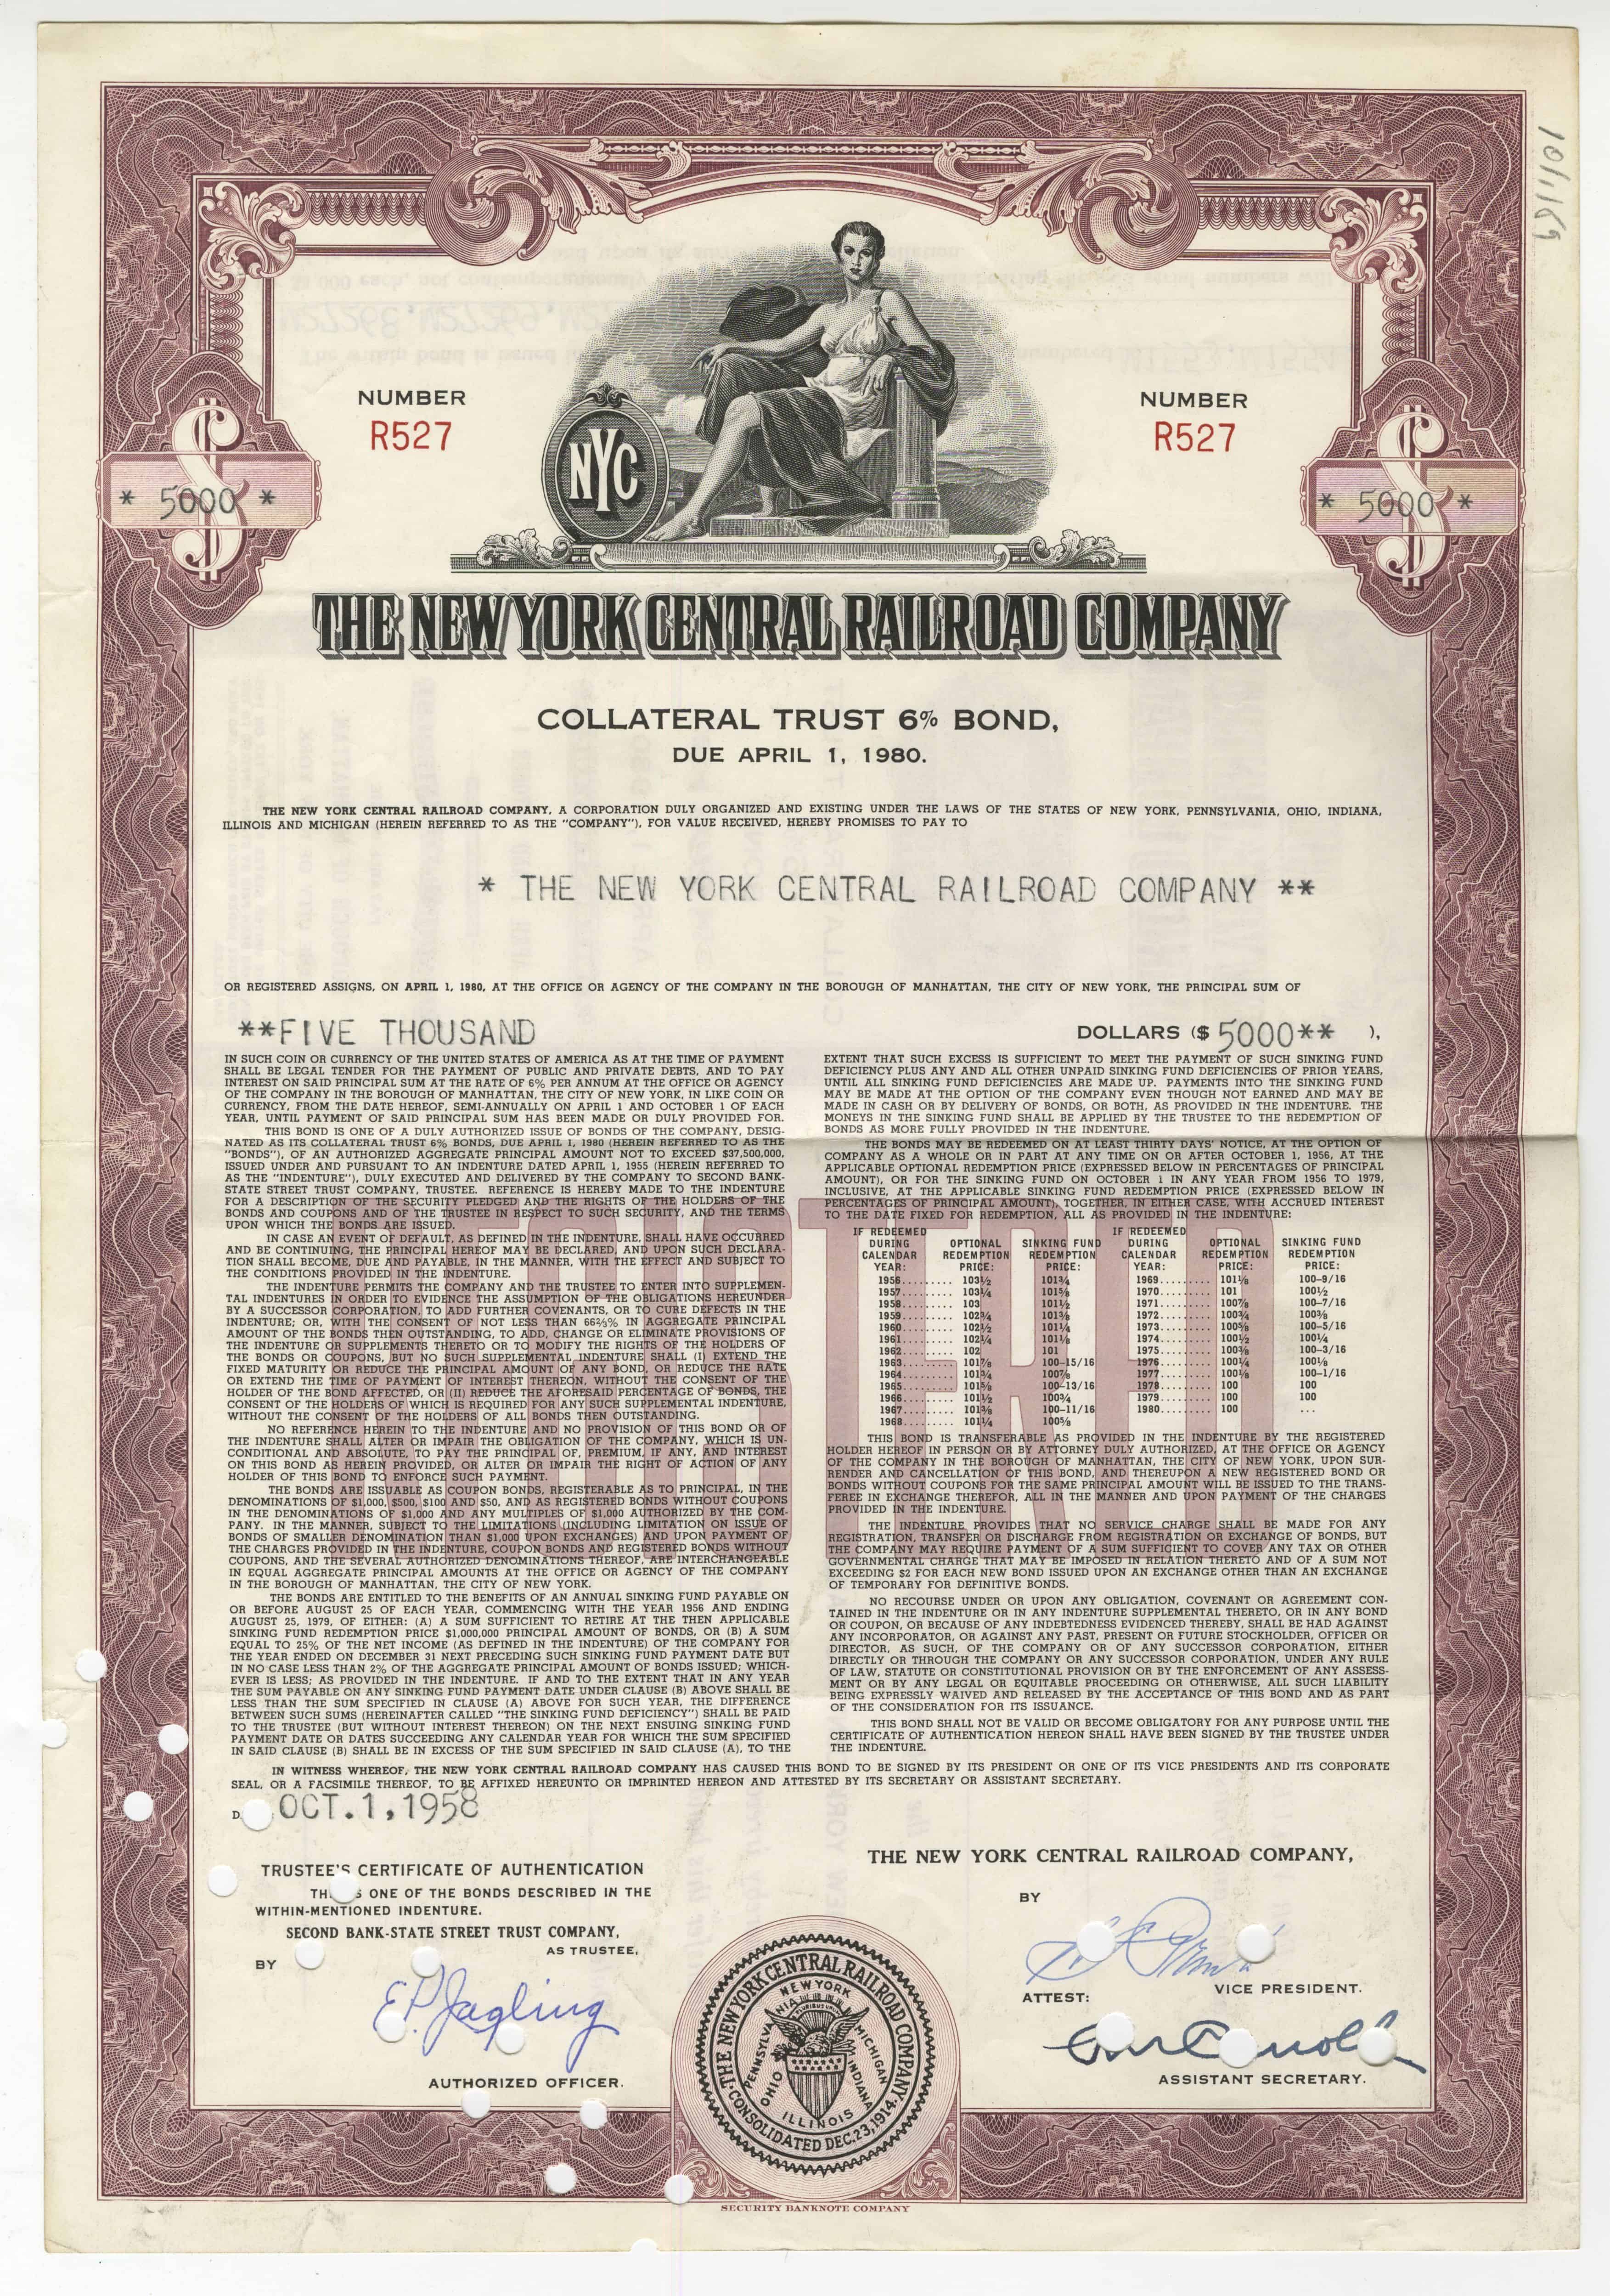 Obligacji The New York Central Railroad Company z 1 października 1958 roku